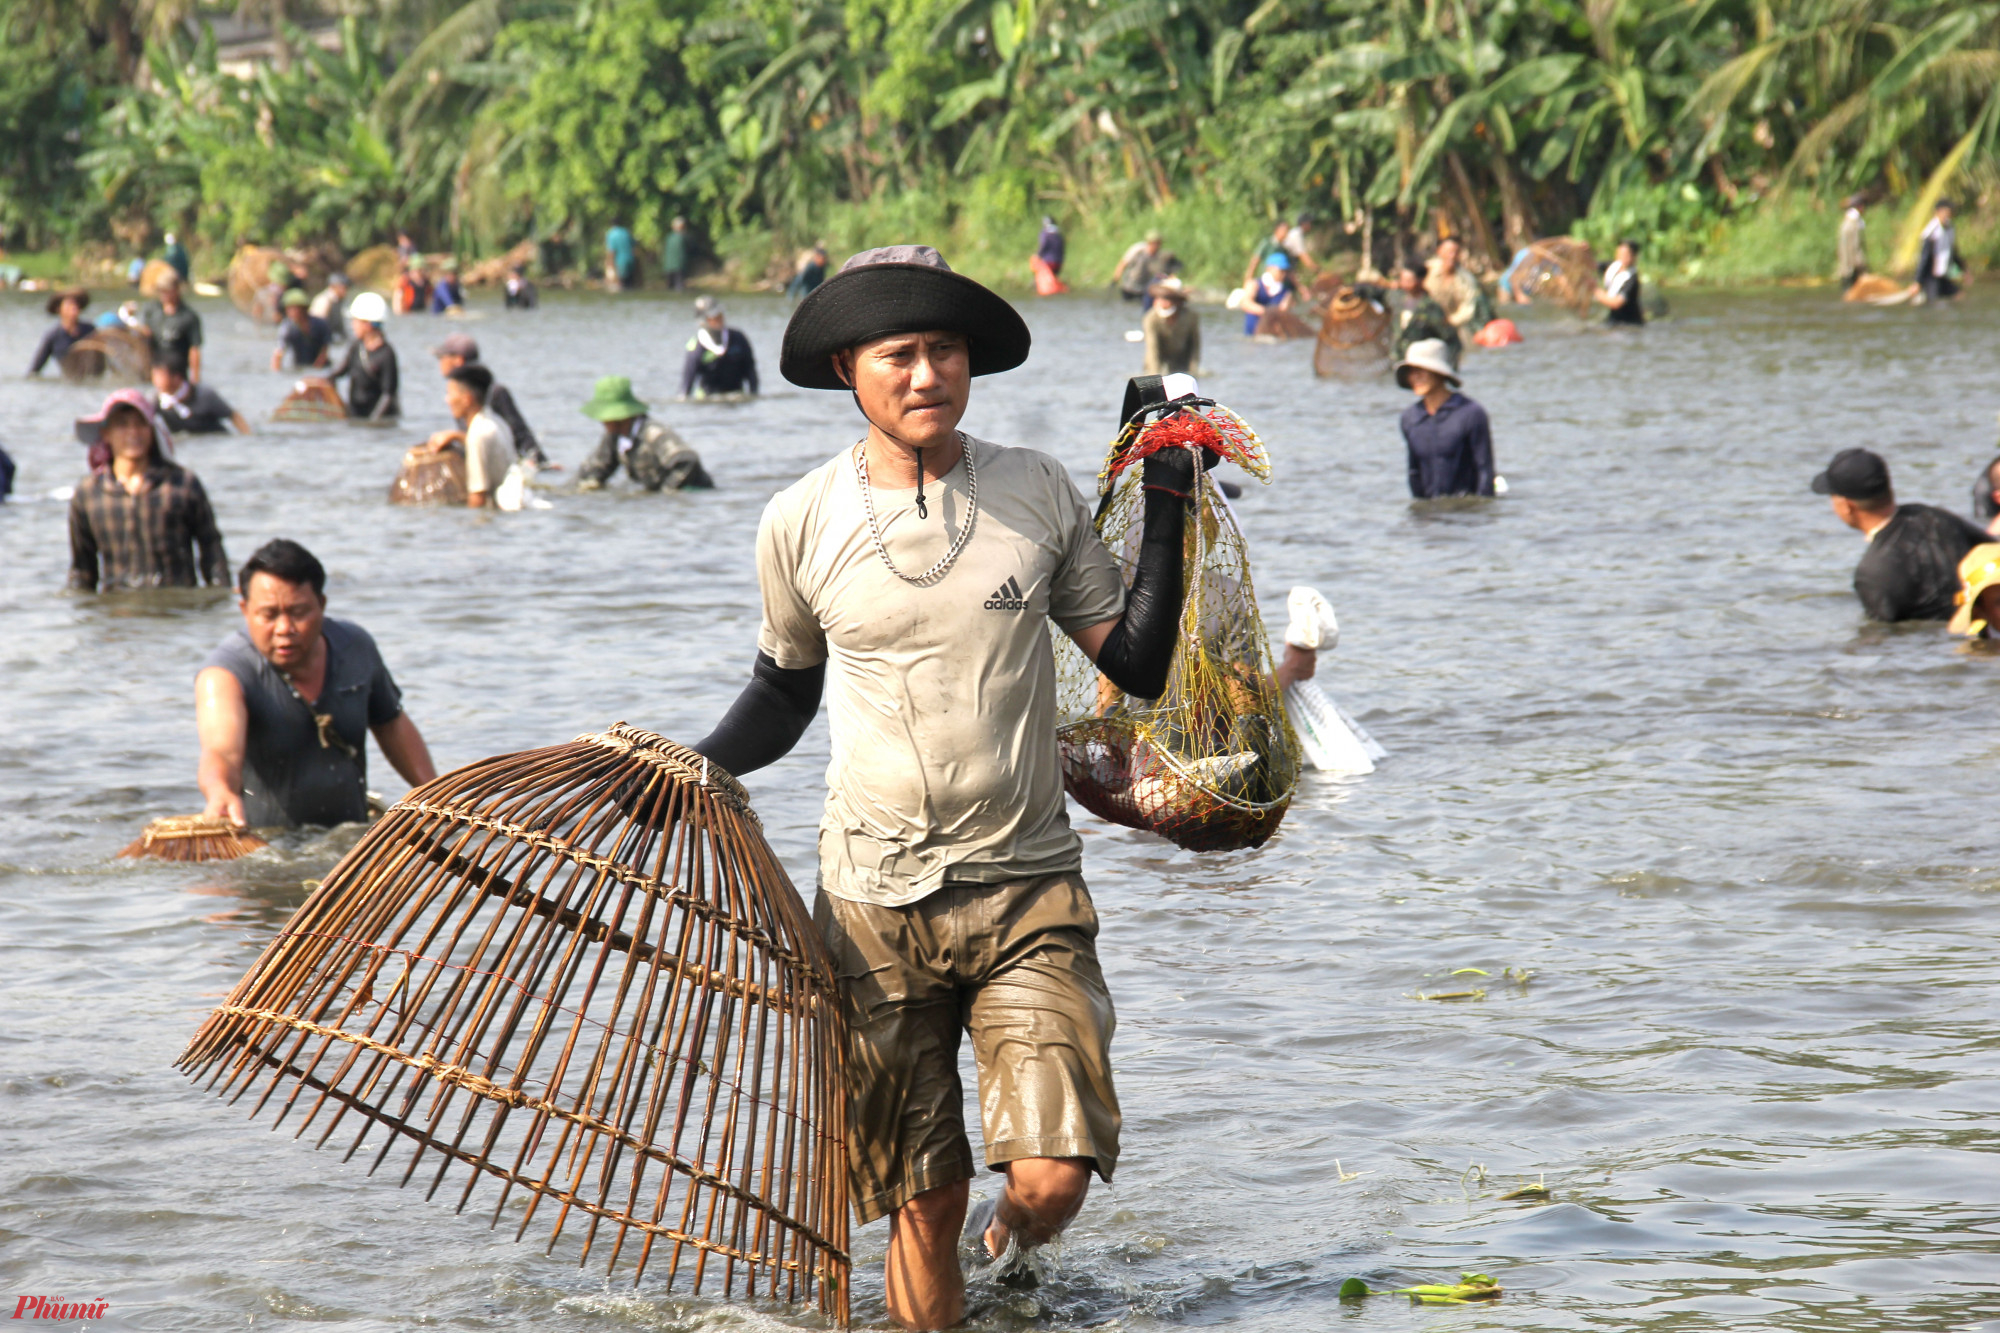 Sau khoảng 1 tiếng đồng hồ “vật lộn” dưới nước, nhiều người phải mang cá lên cho người thân trông coi hộ vì quá nặng, gây khó khăn trong việc đánh bắt cá.